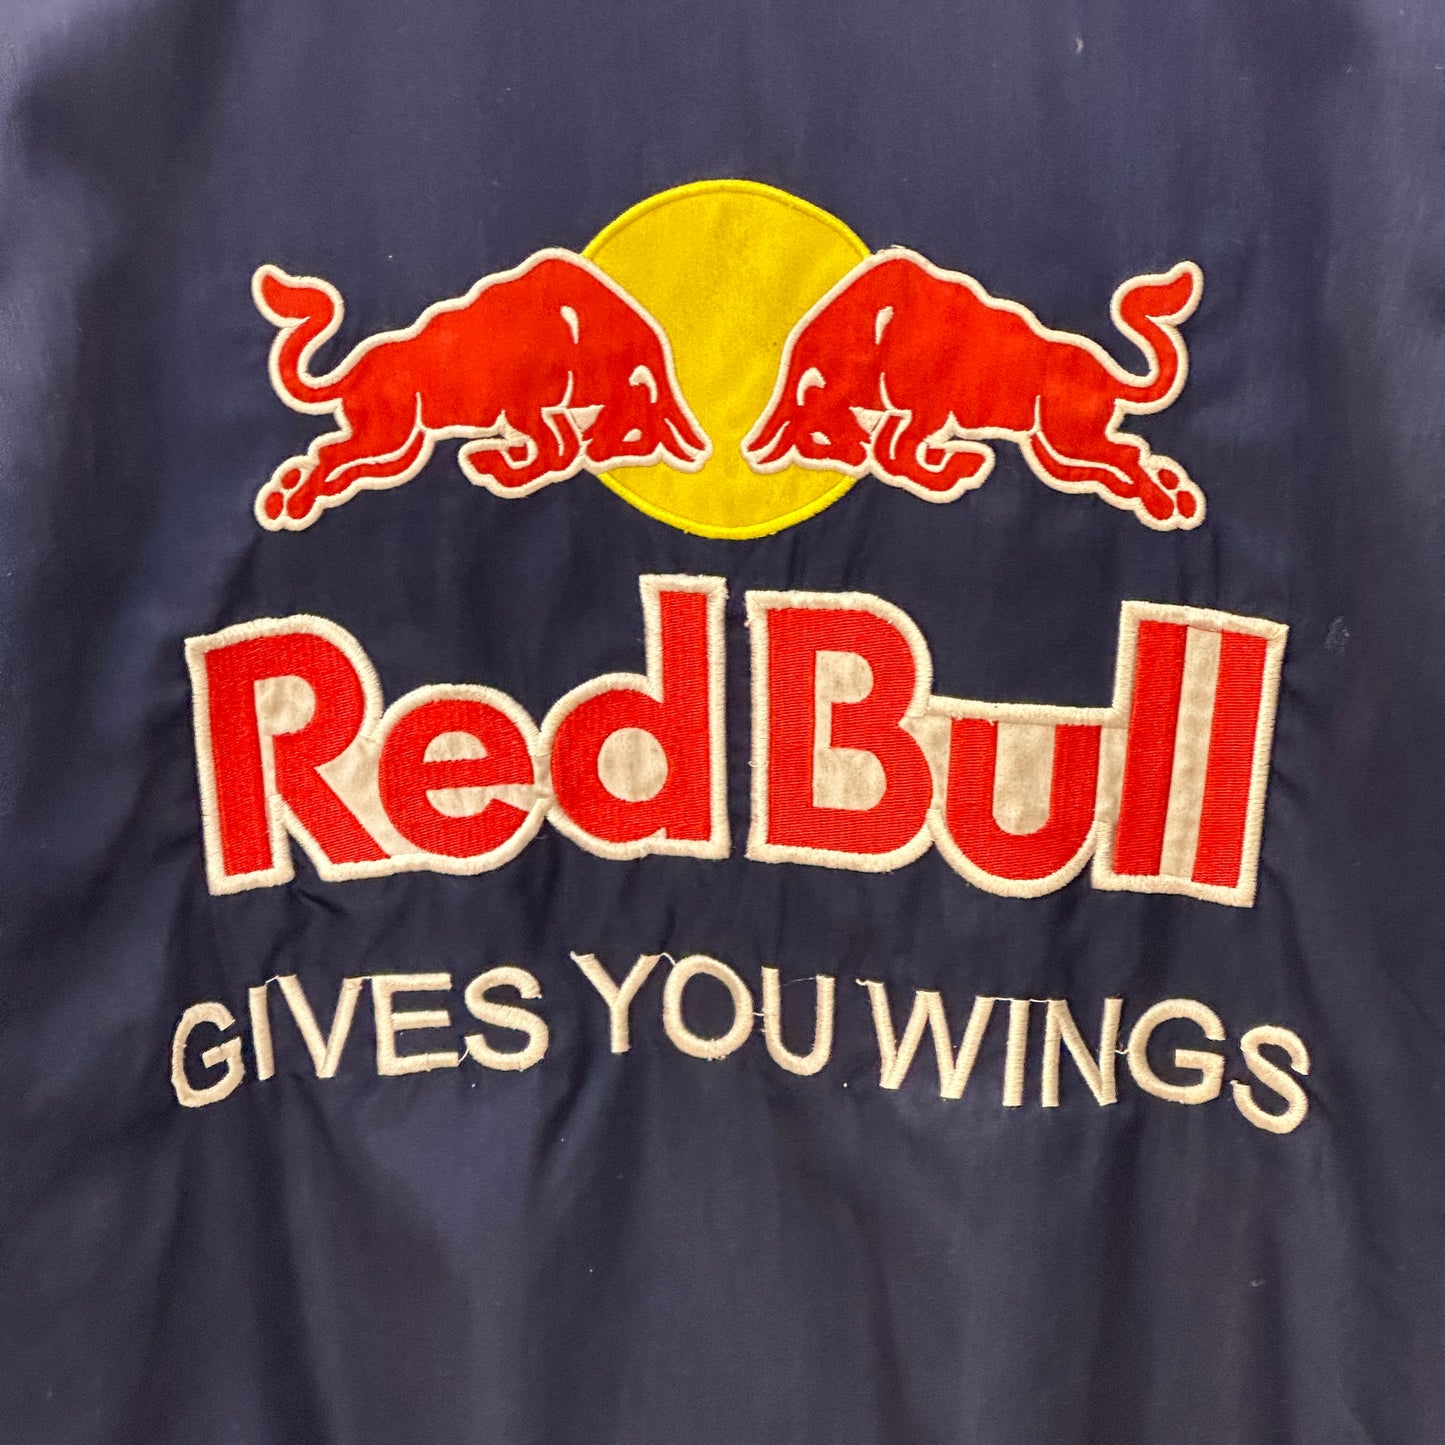 Vintage "Red Bull" 90's Nascar Racing Full-Zip Jacket